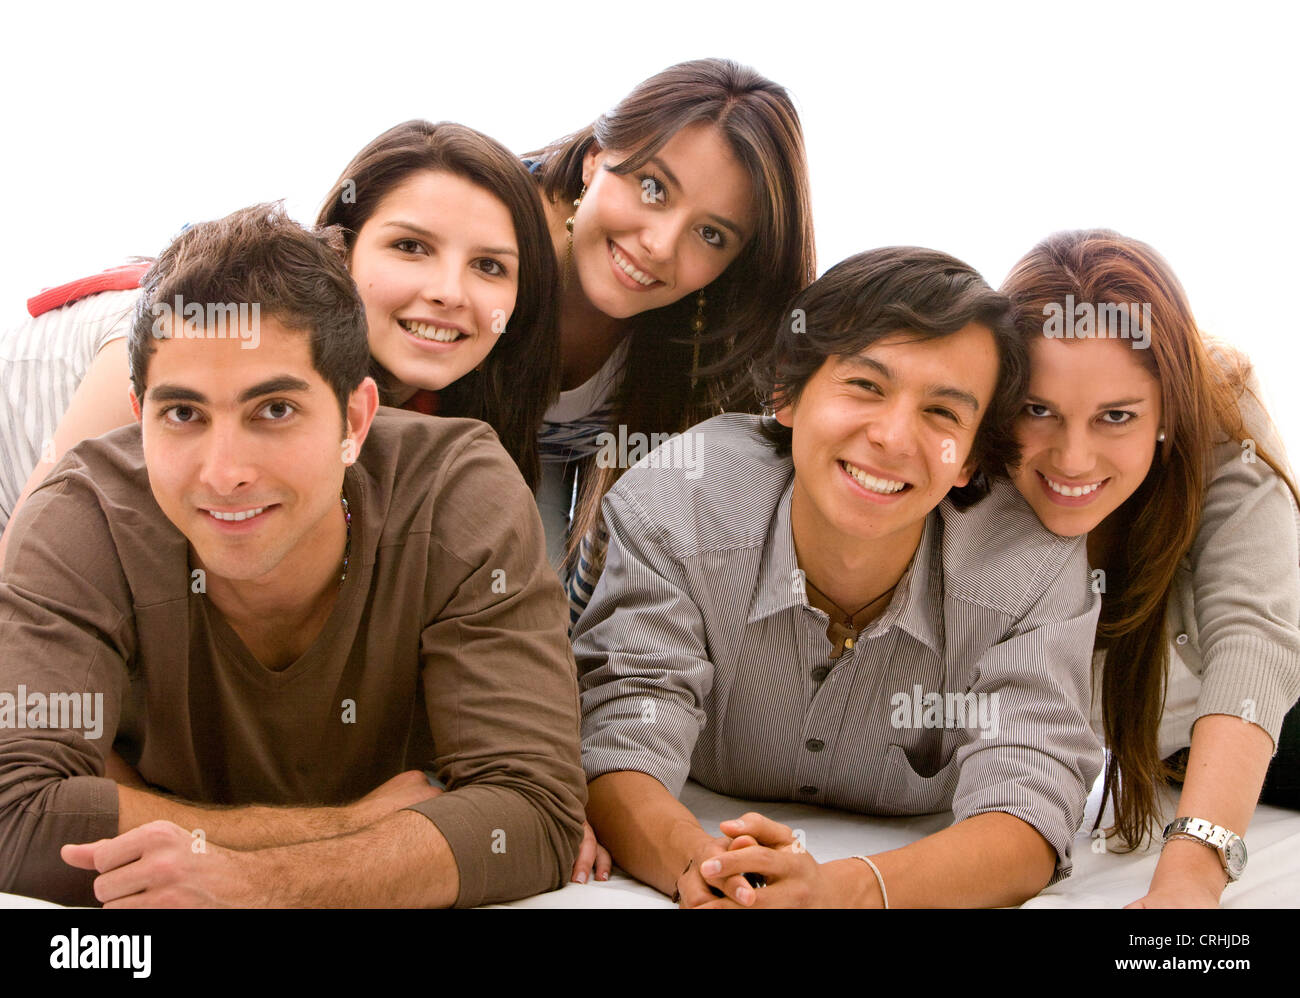 Gruppe von glücklich lächelnde junge Erwachsene, die auf dem Boden liegend Stockfoto